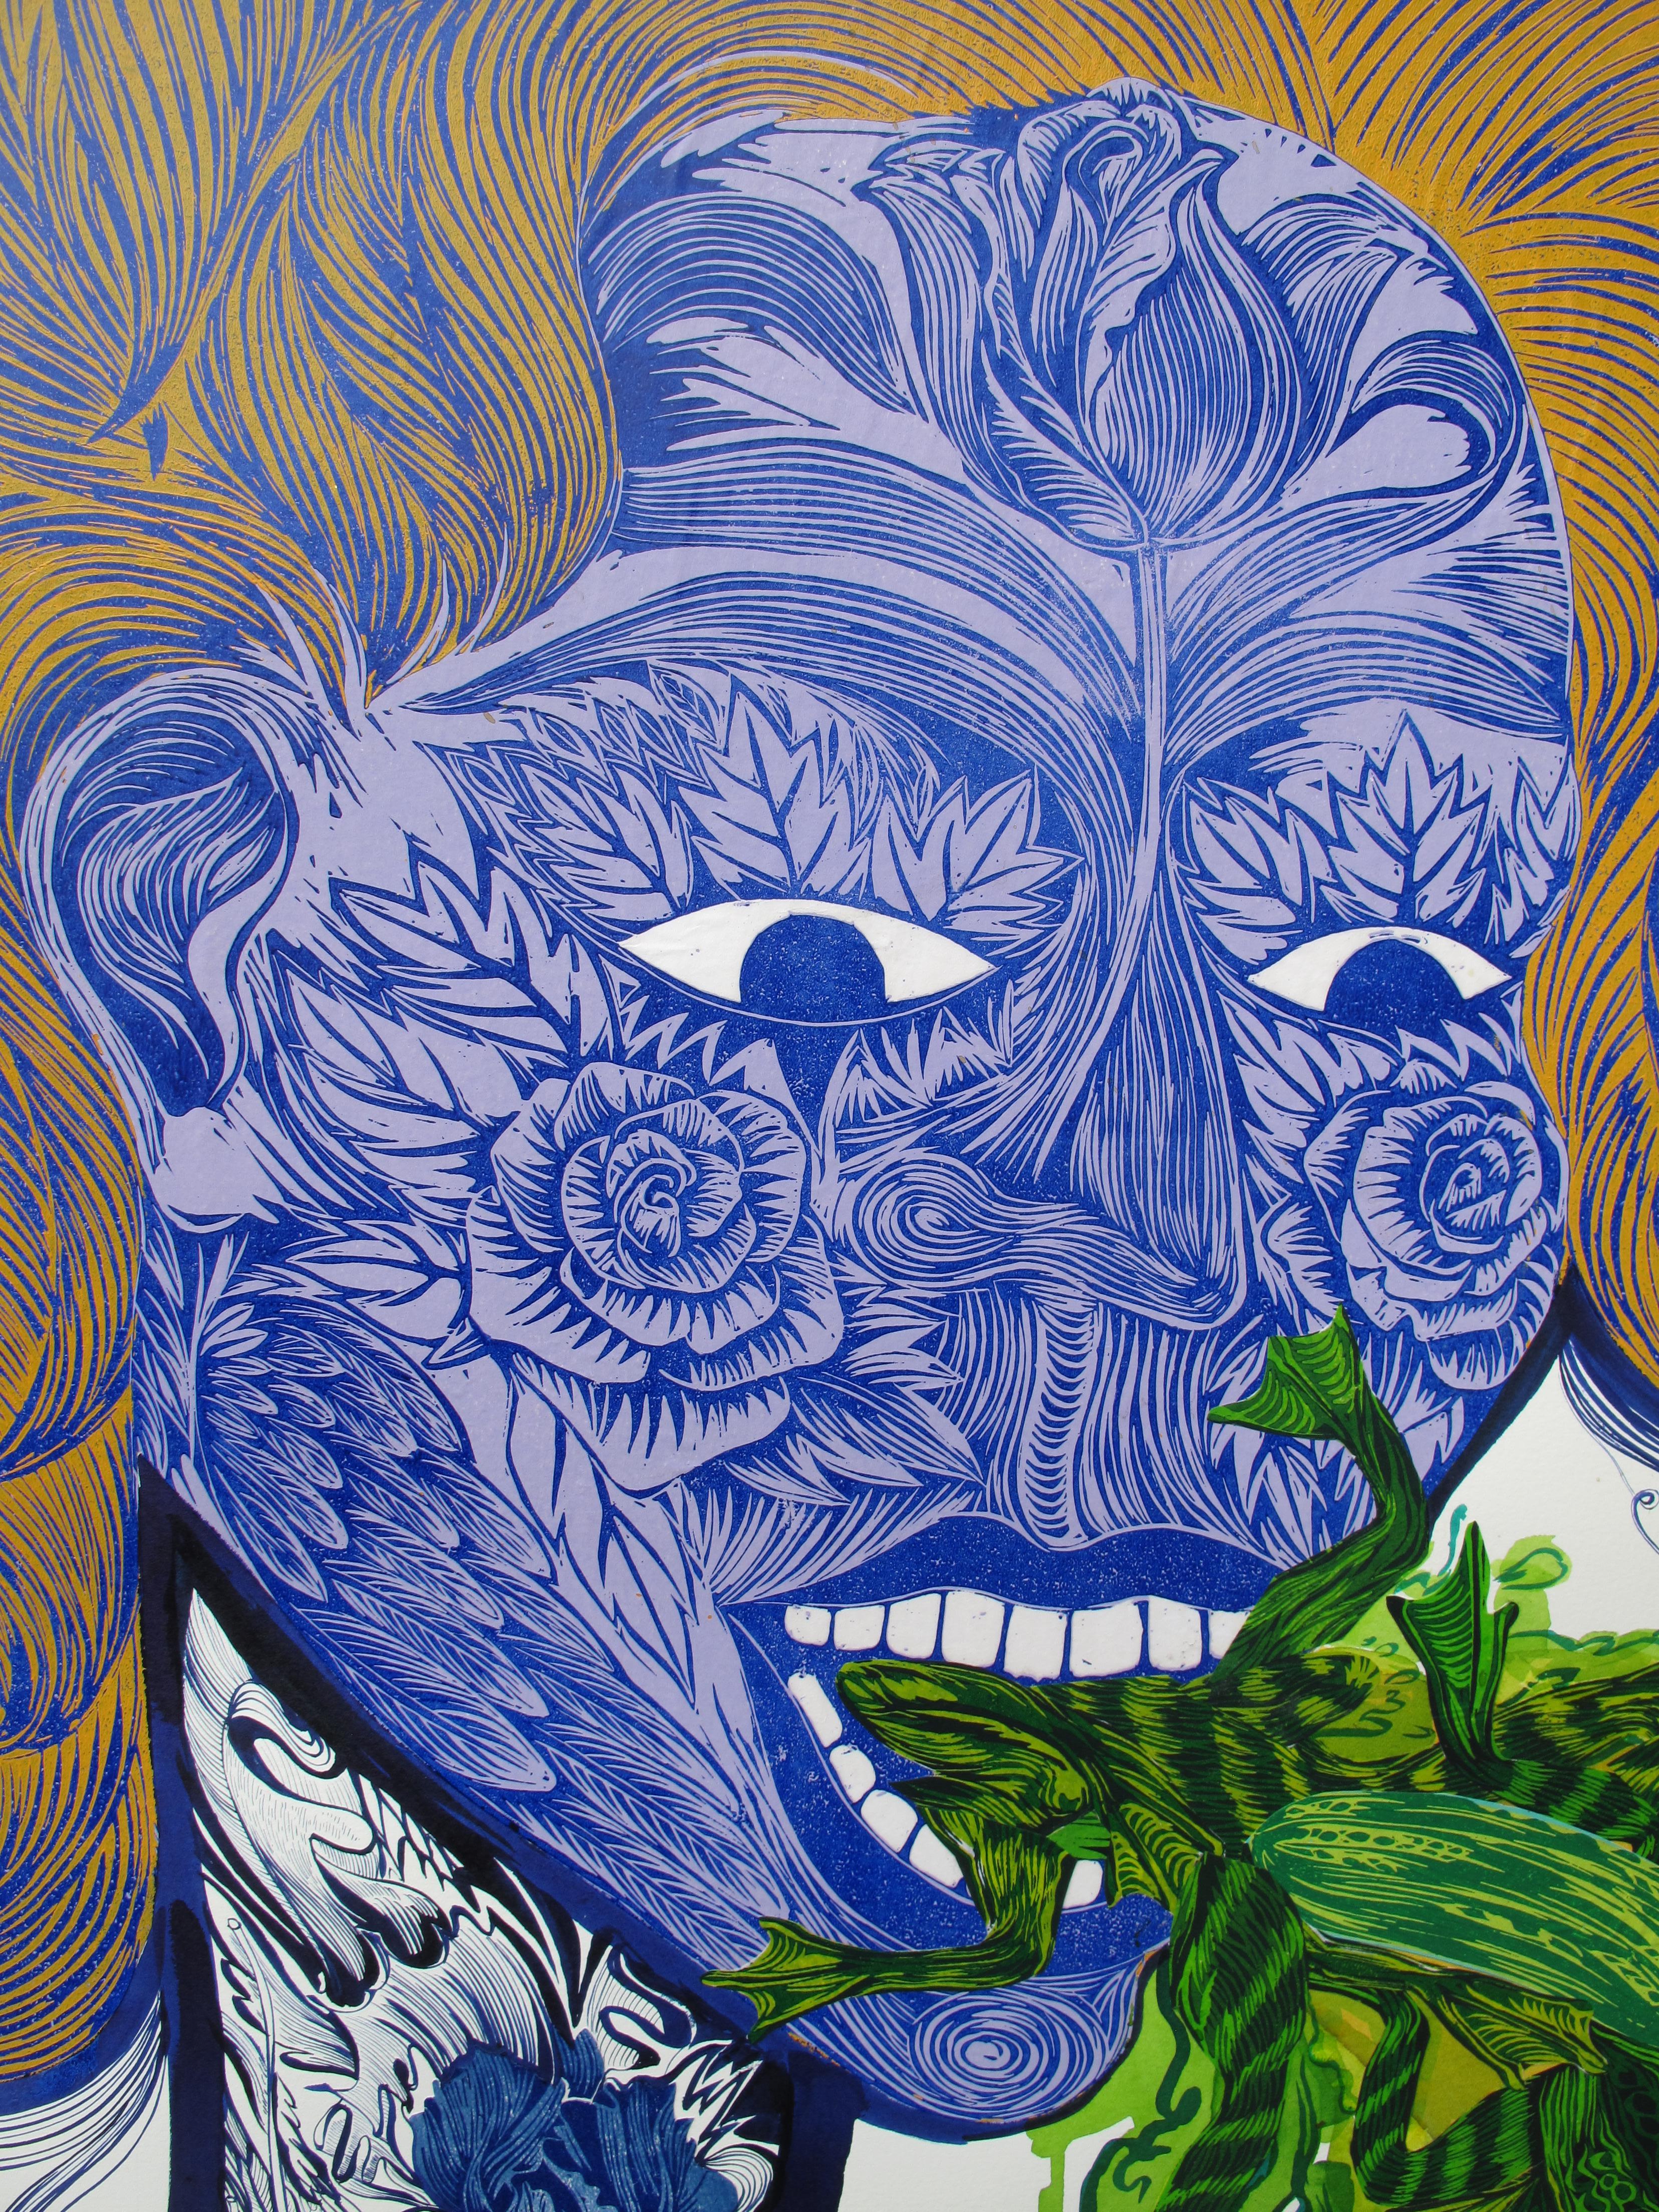  Grande peinture surréaliste Royal College of Art LGBTQ+ femmes artiste vert bleu - Surréalisme Painting par Isabel Rock